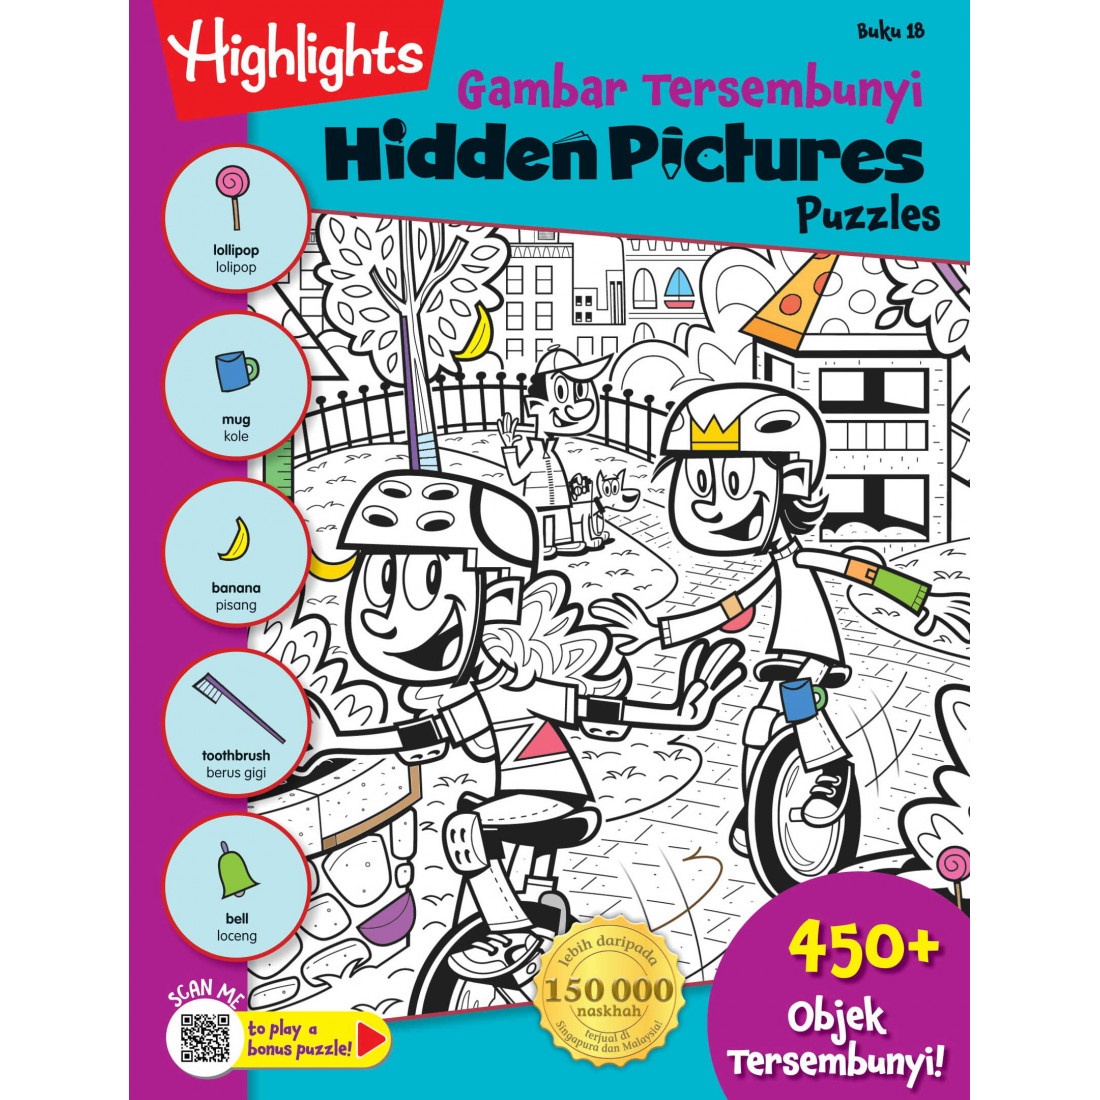 Highlights Hidden Pictures Puzzles Gambar Tersembunyi Buku 18 Pelangi